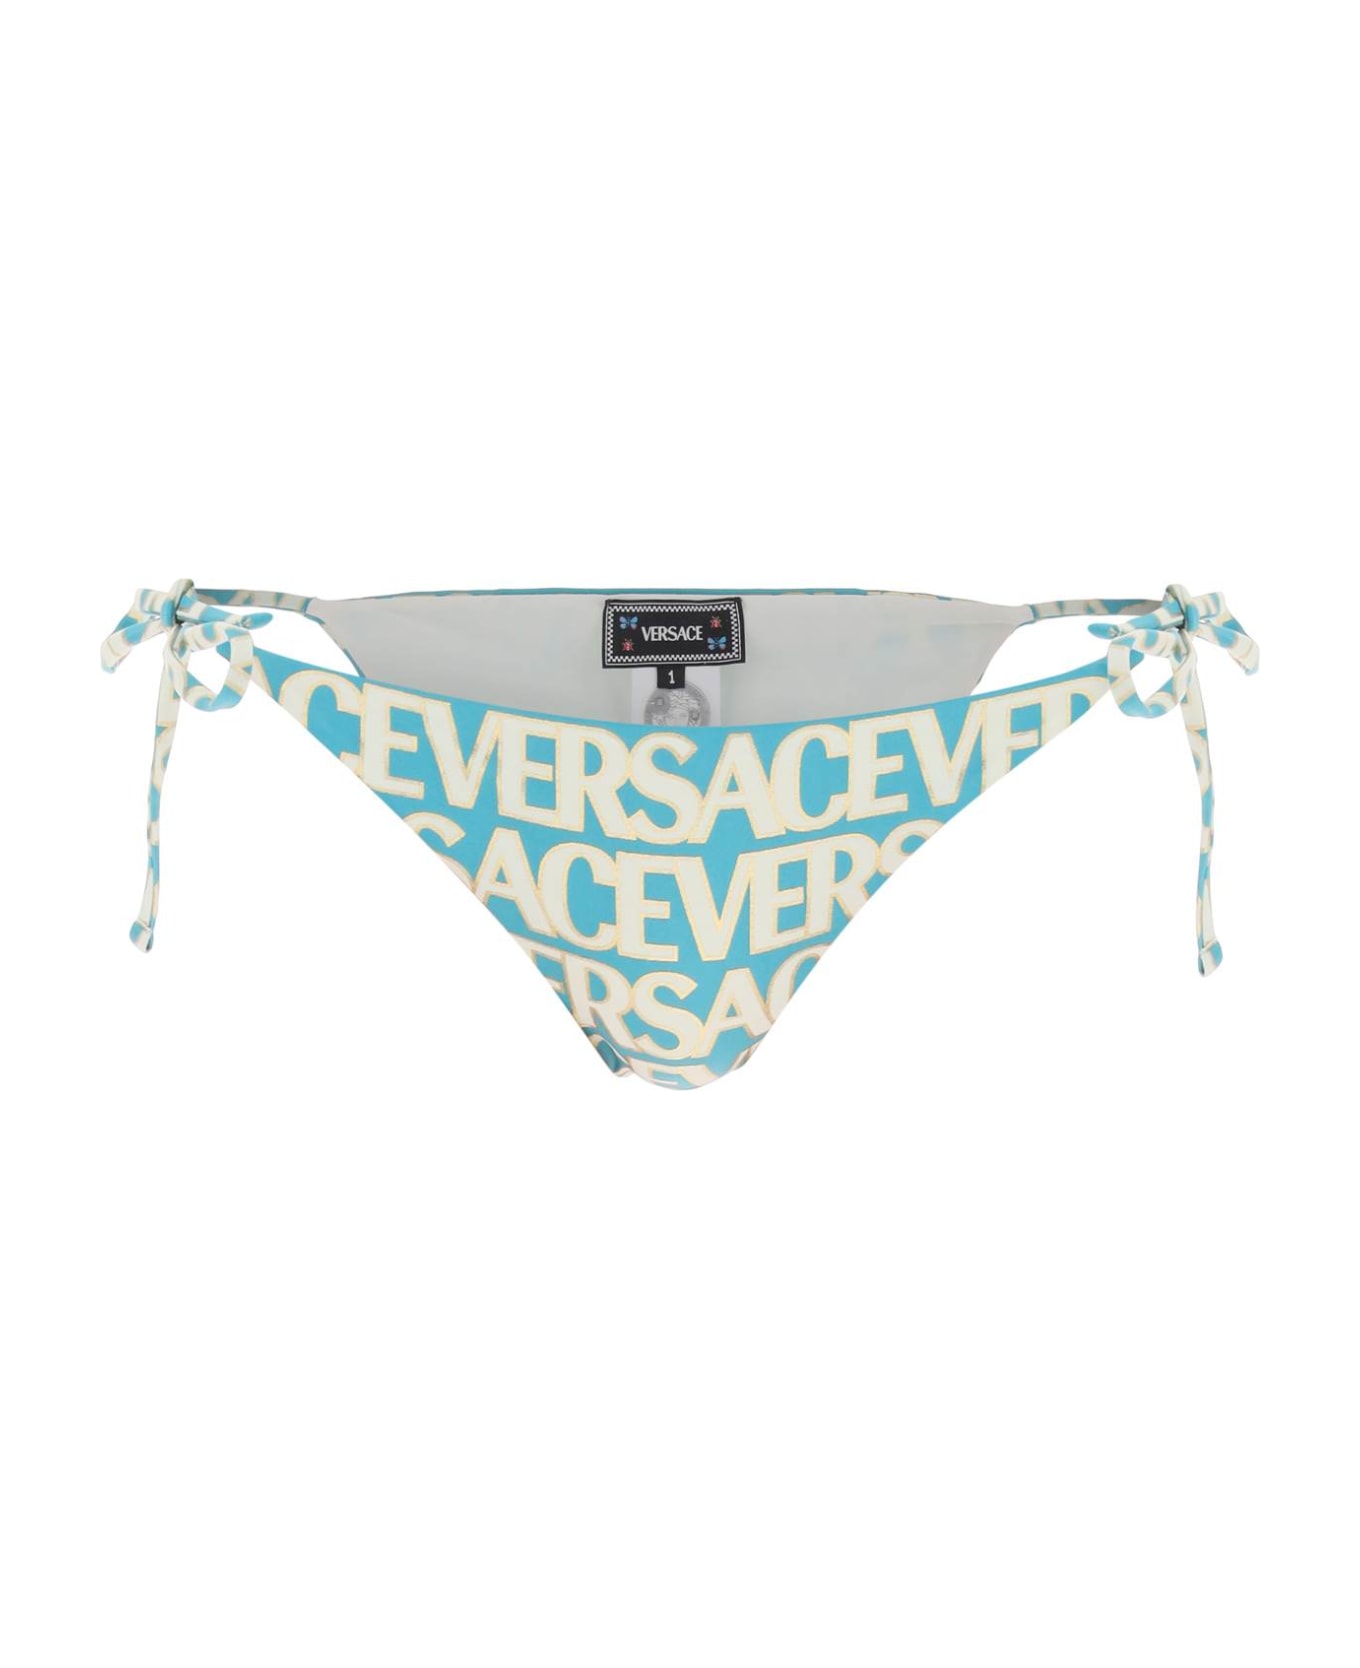 Versace Allover Bikini Bottom - TURQUOISE AVORY (Light blue)